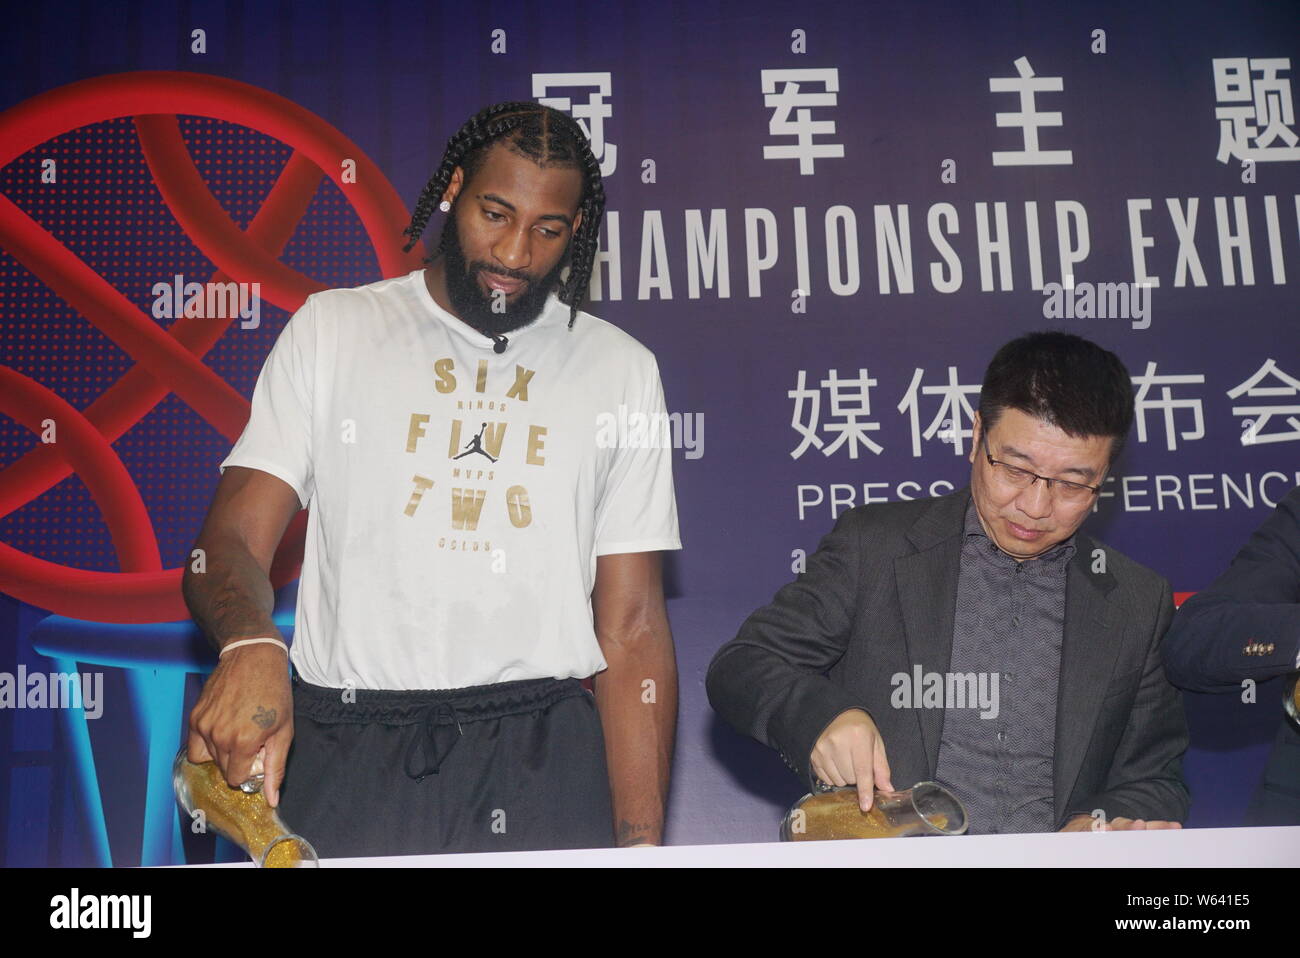 NBA-Star Andre Drummond von Detroit Pistons besucht eine Pressekonferenz für die NBA Meisterschaft Ausstellung in Shanghai, China, 31. August 2018. Stockfoto